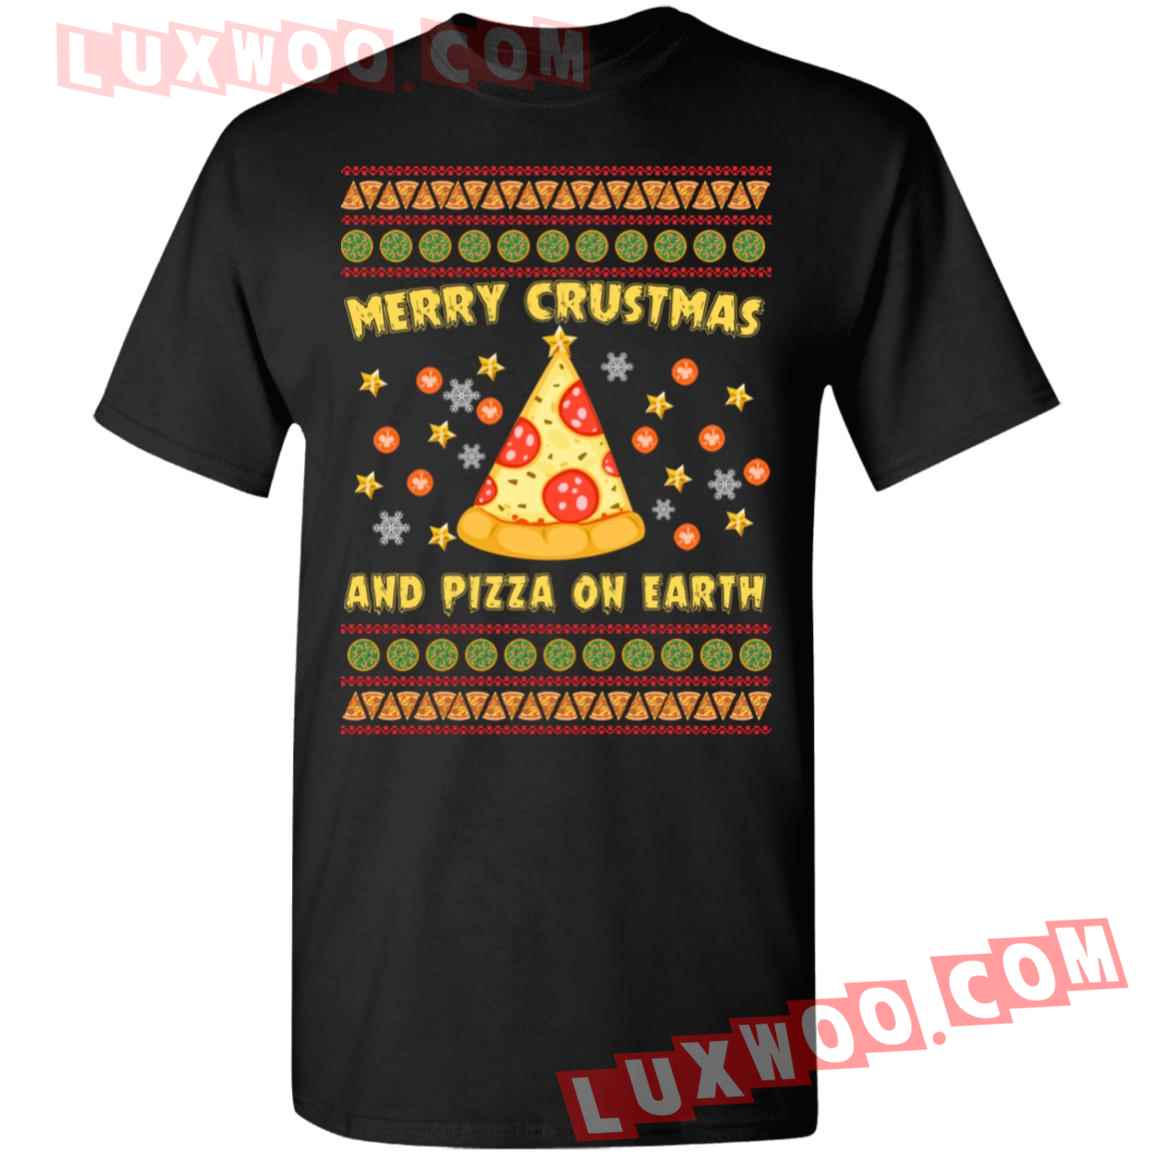 Merry Crustmas And Pizza On Earth Sweatshirt